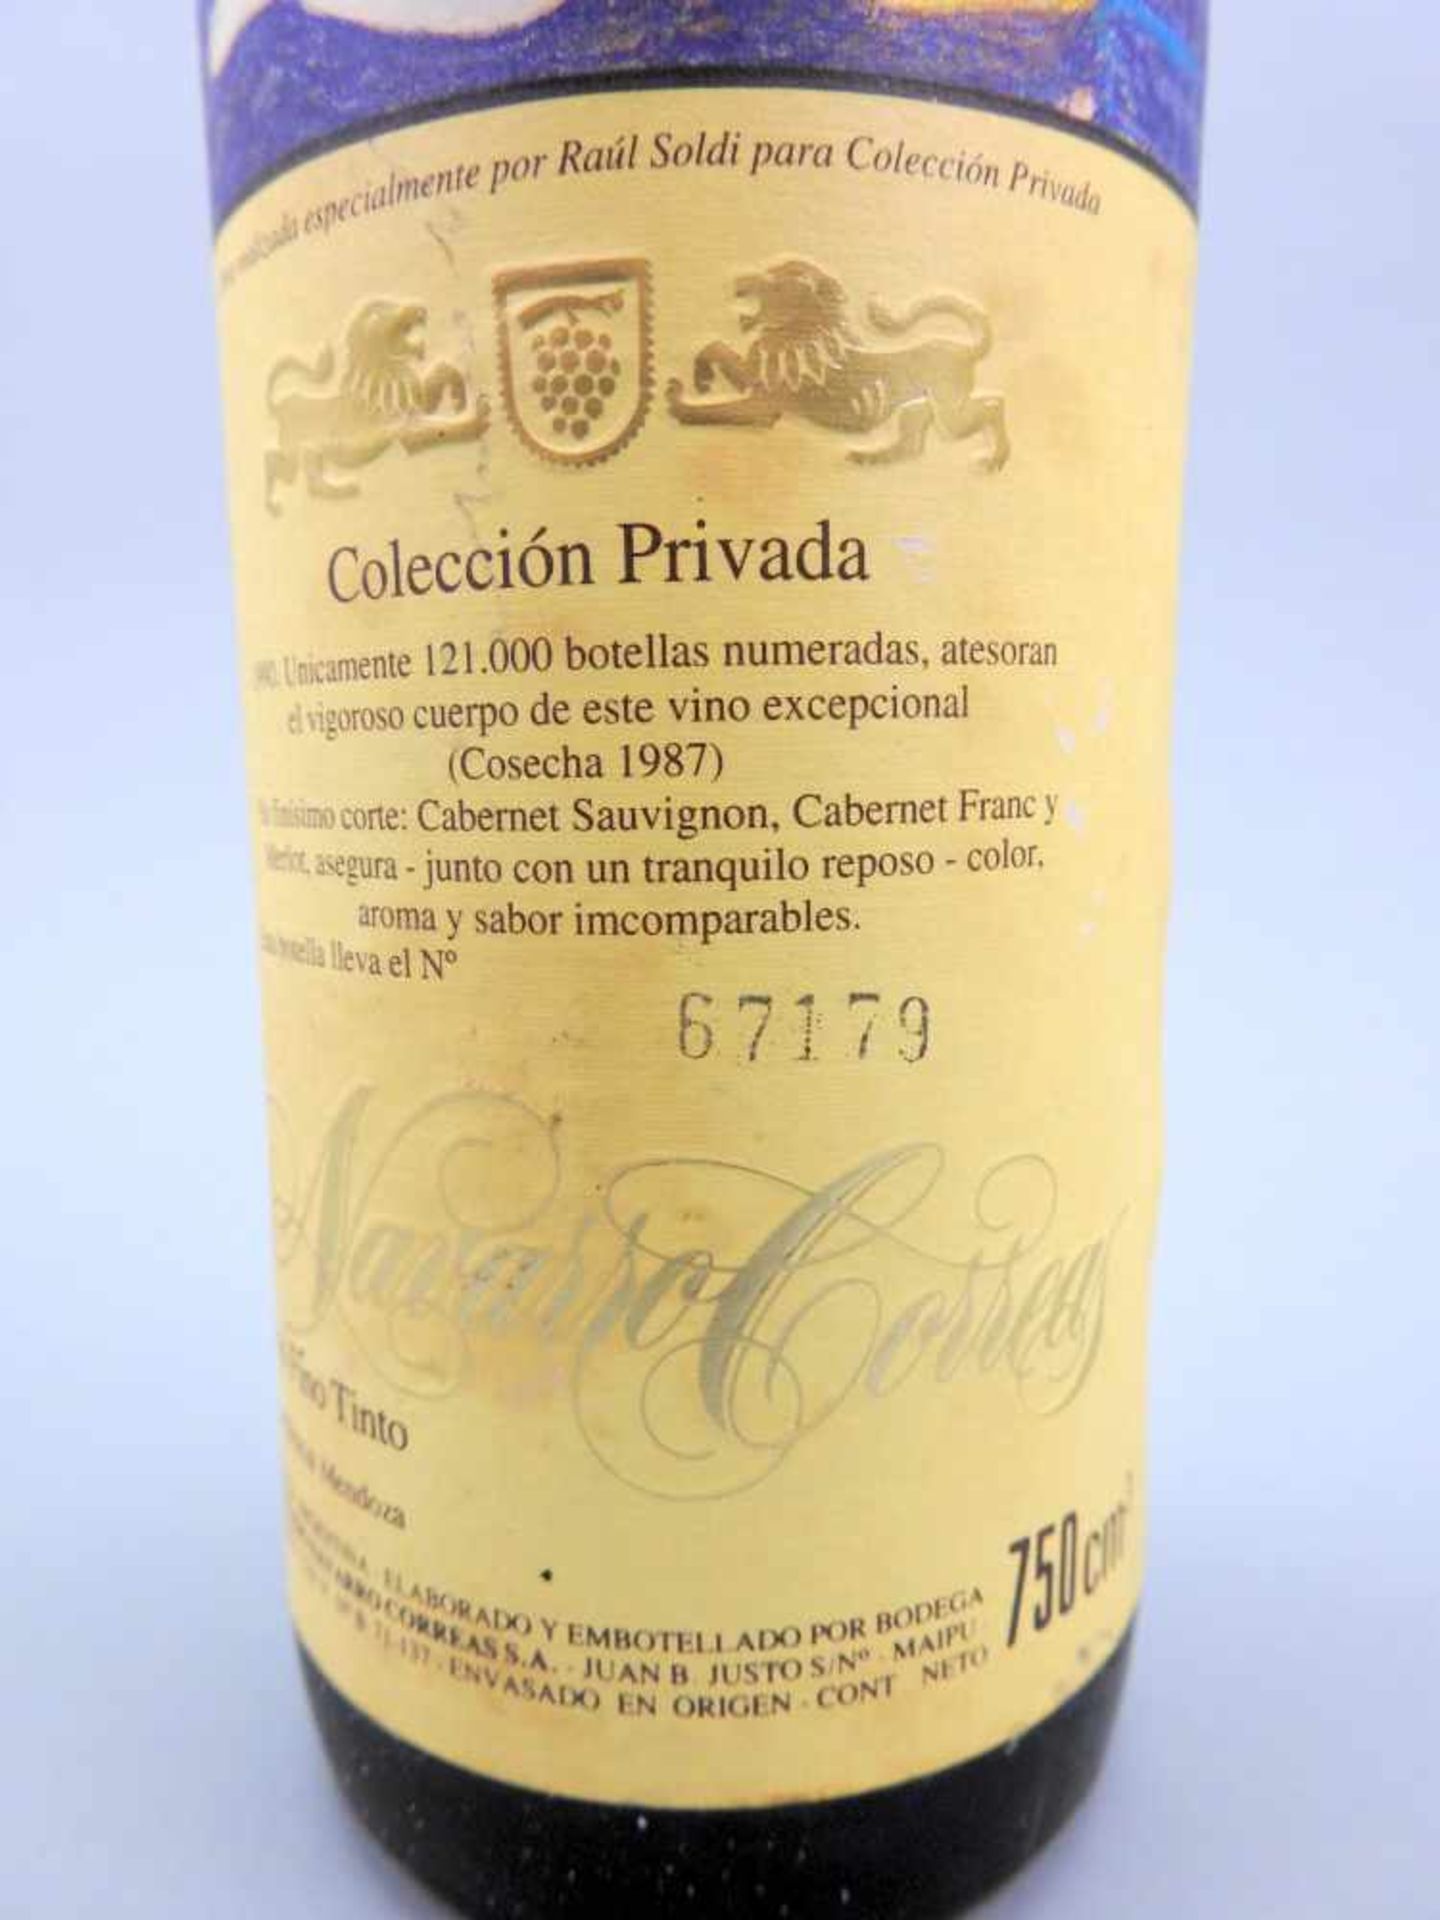 Cabernet Sauvignon, Colecctión PrivadaNavarro Correas, Jahrgang 1987, Inhalt 750 ml. - Image 3 of 3